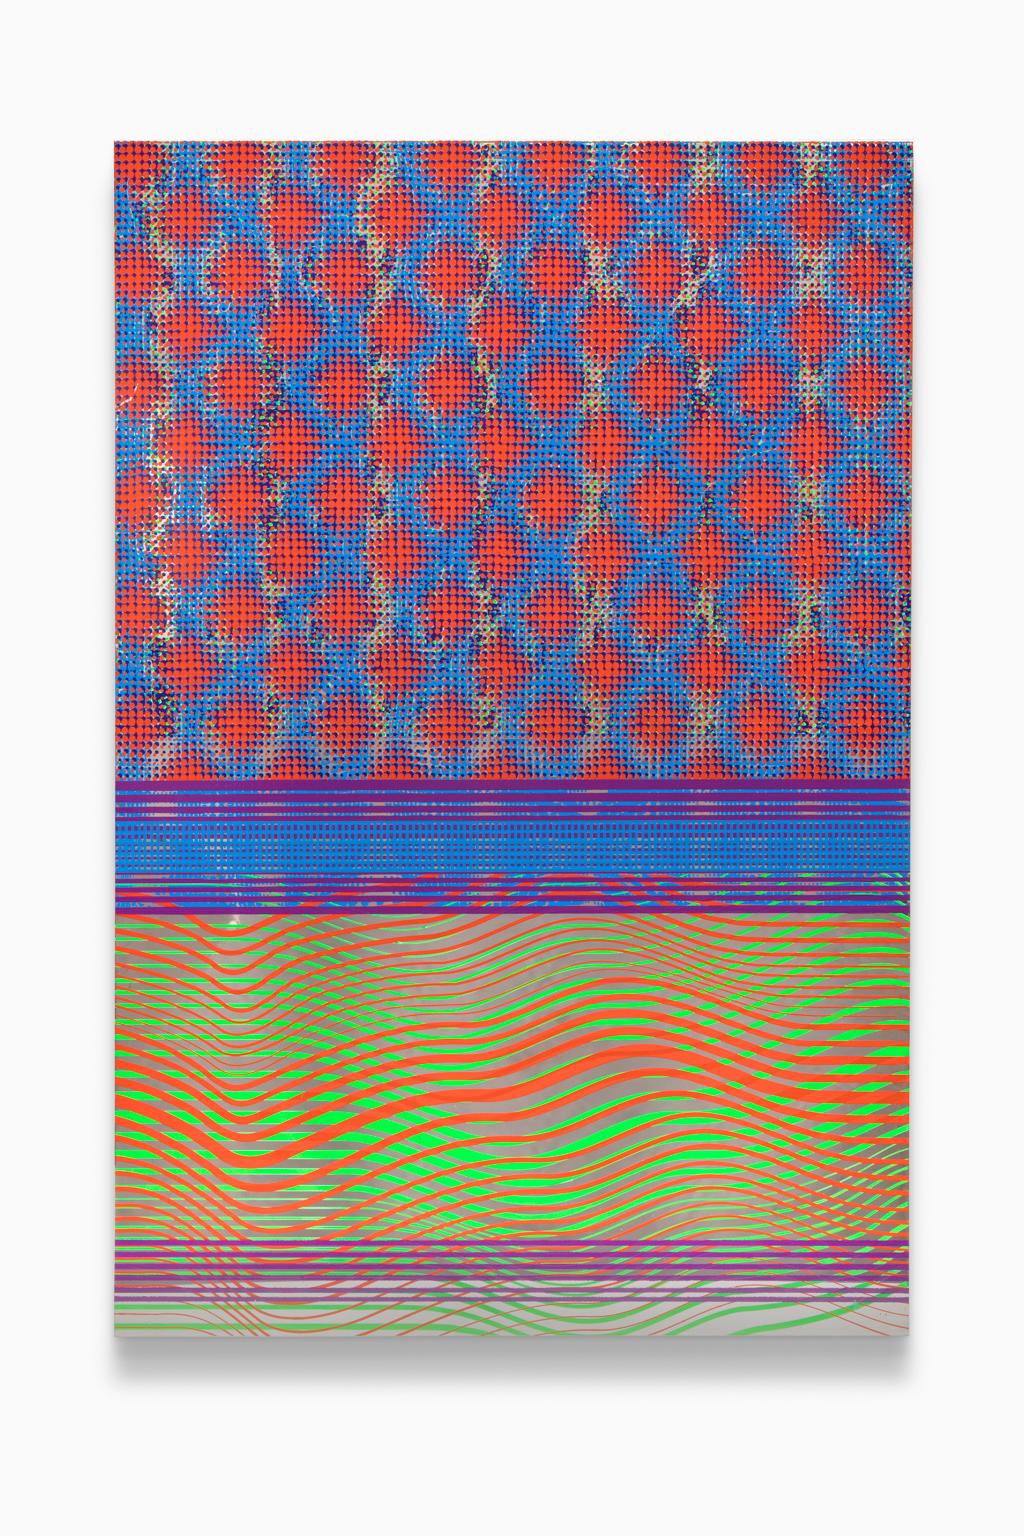 "Untitled" de Beverly Fishman est une sérigraphie sur métal inoxydable poli, remplie de couleurs primaires vives et de motifs et tourbillons répétitifs. Artistics s'inspire d'un large éventail d'influences artistiques et conceptuelles pour créer ses